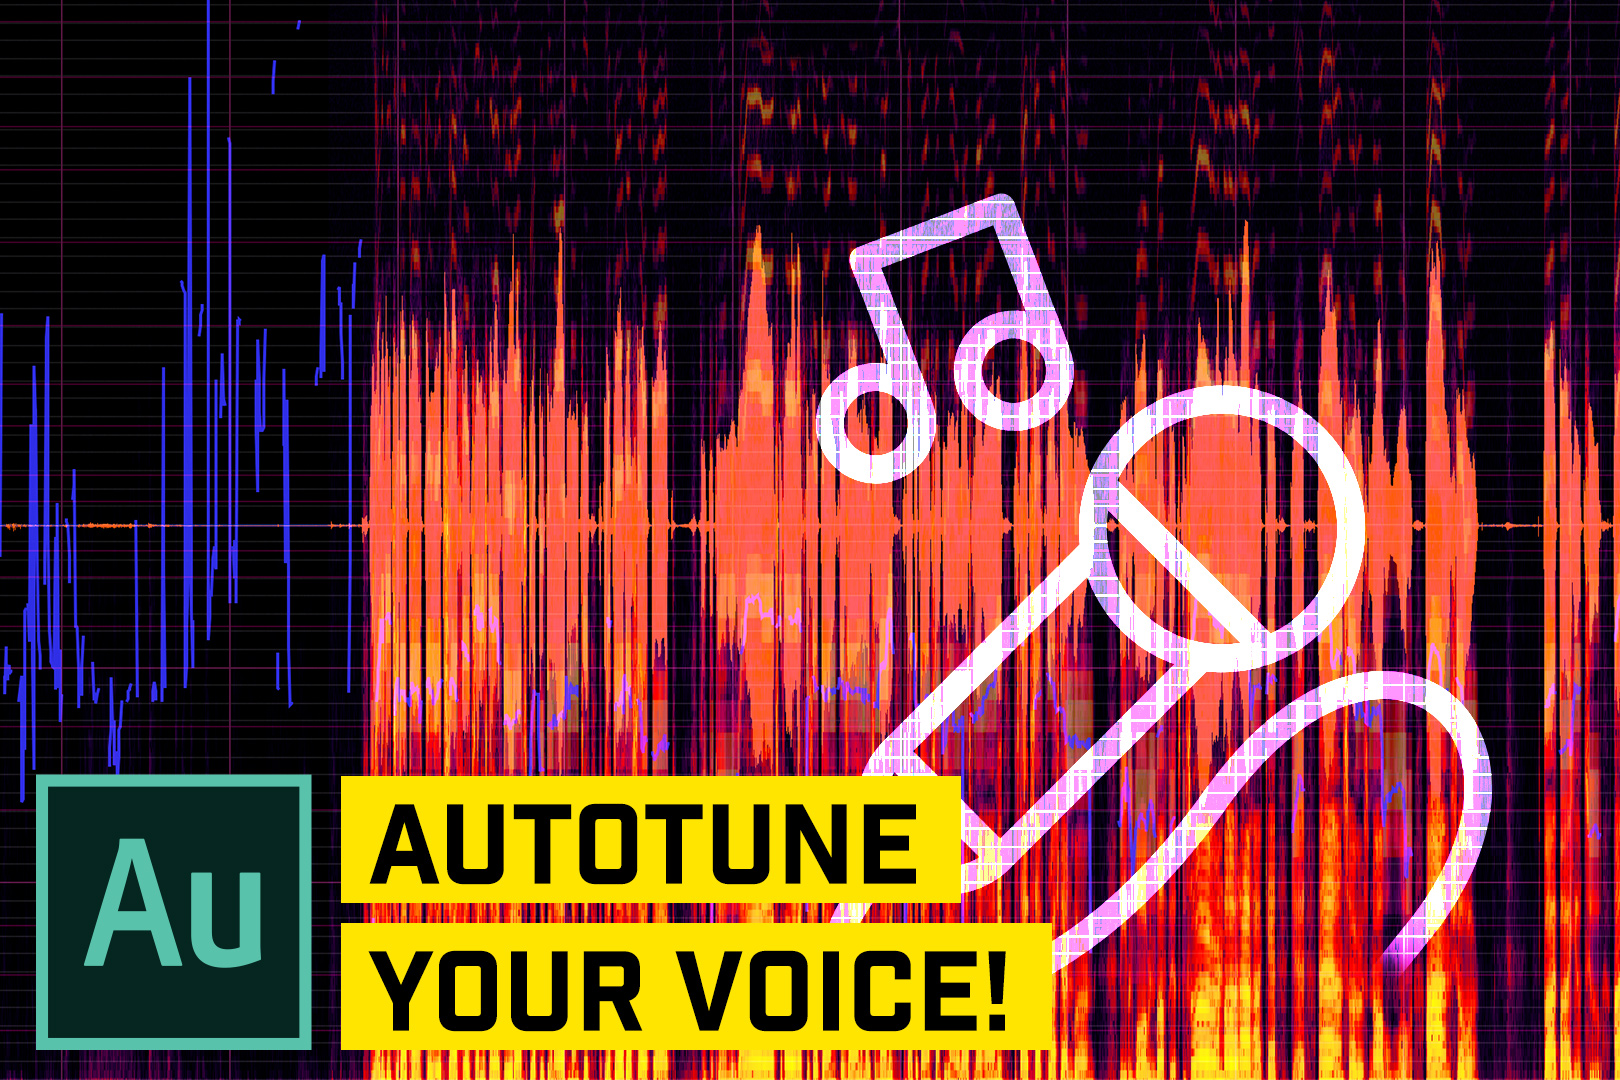 Auto tune audio online